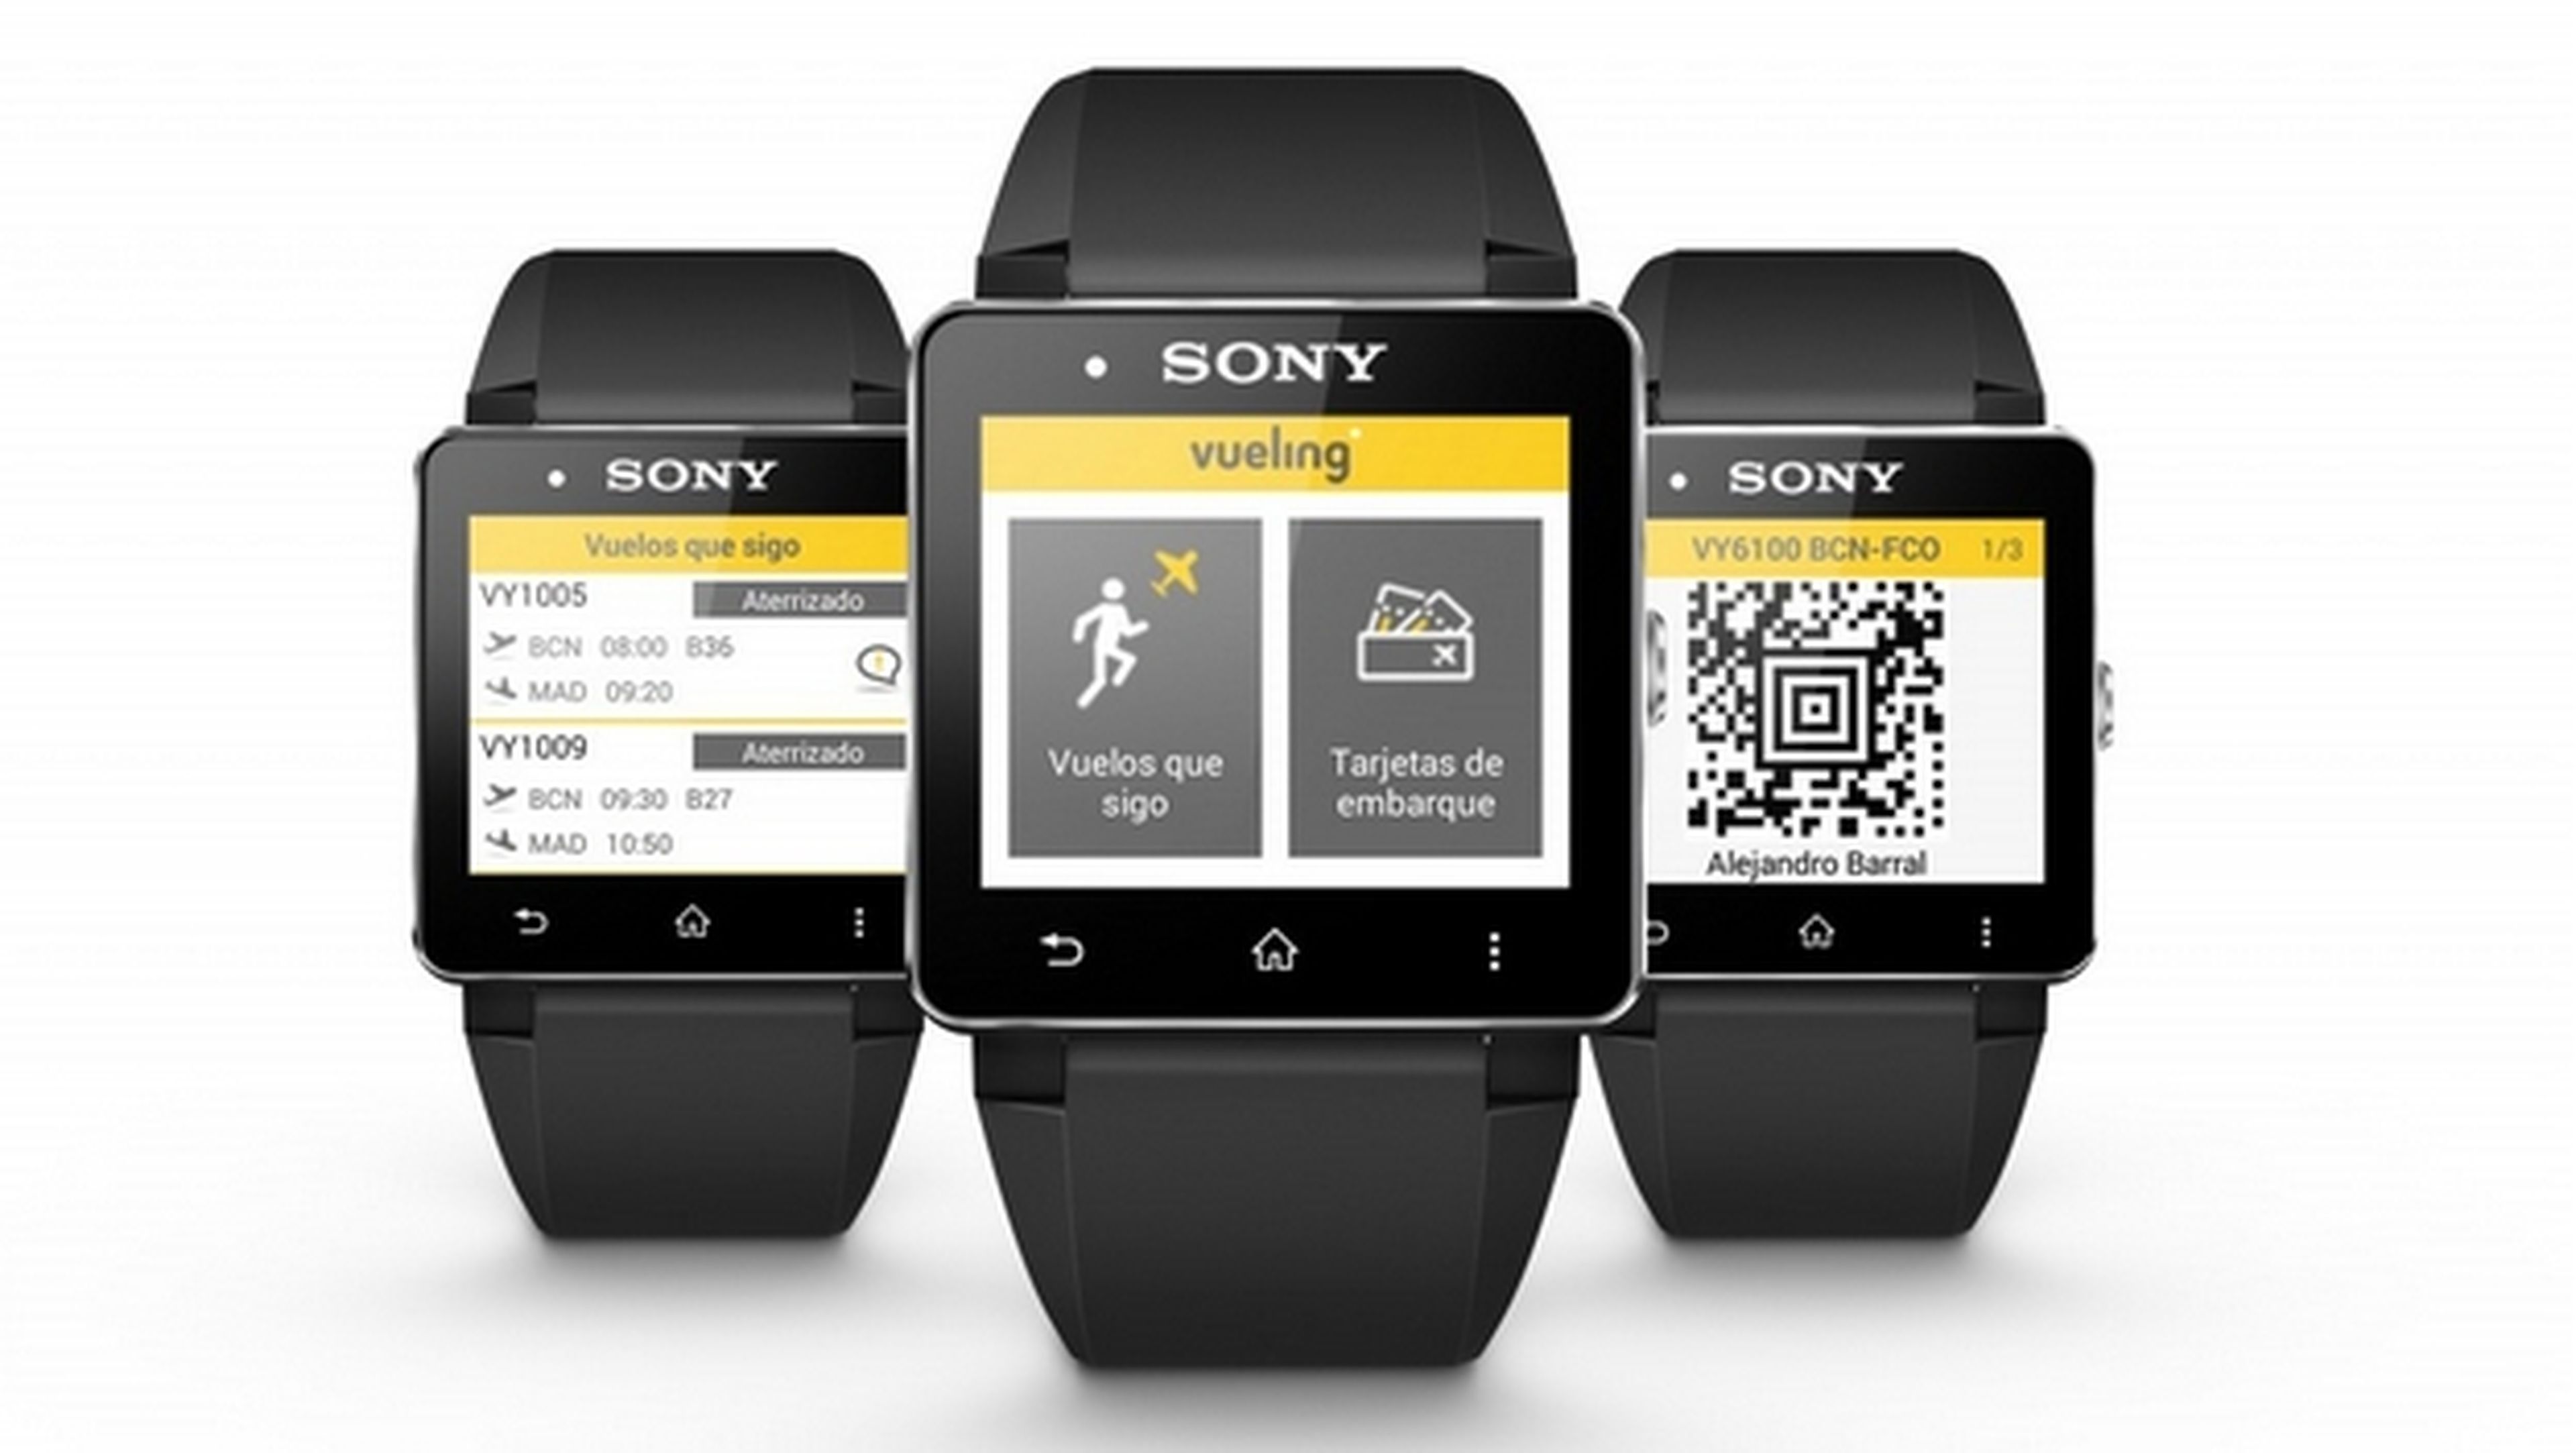 Sony y Vueling presentan la primera tarjeta de embarque vestible del mundo, para smartwatch